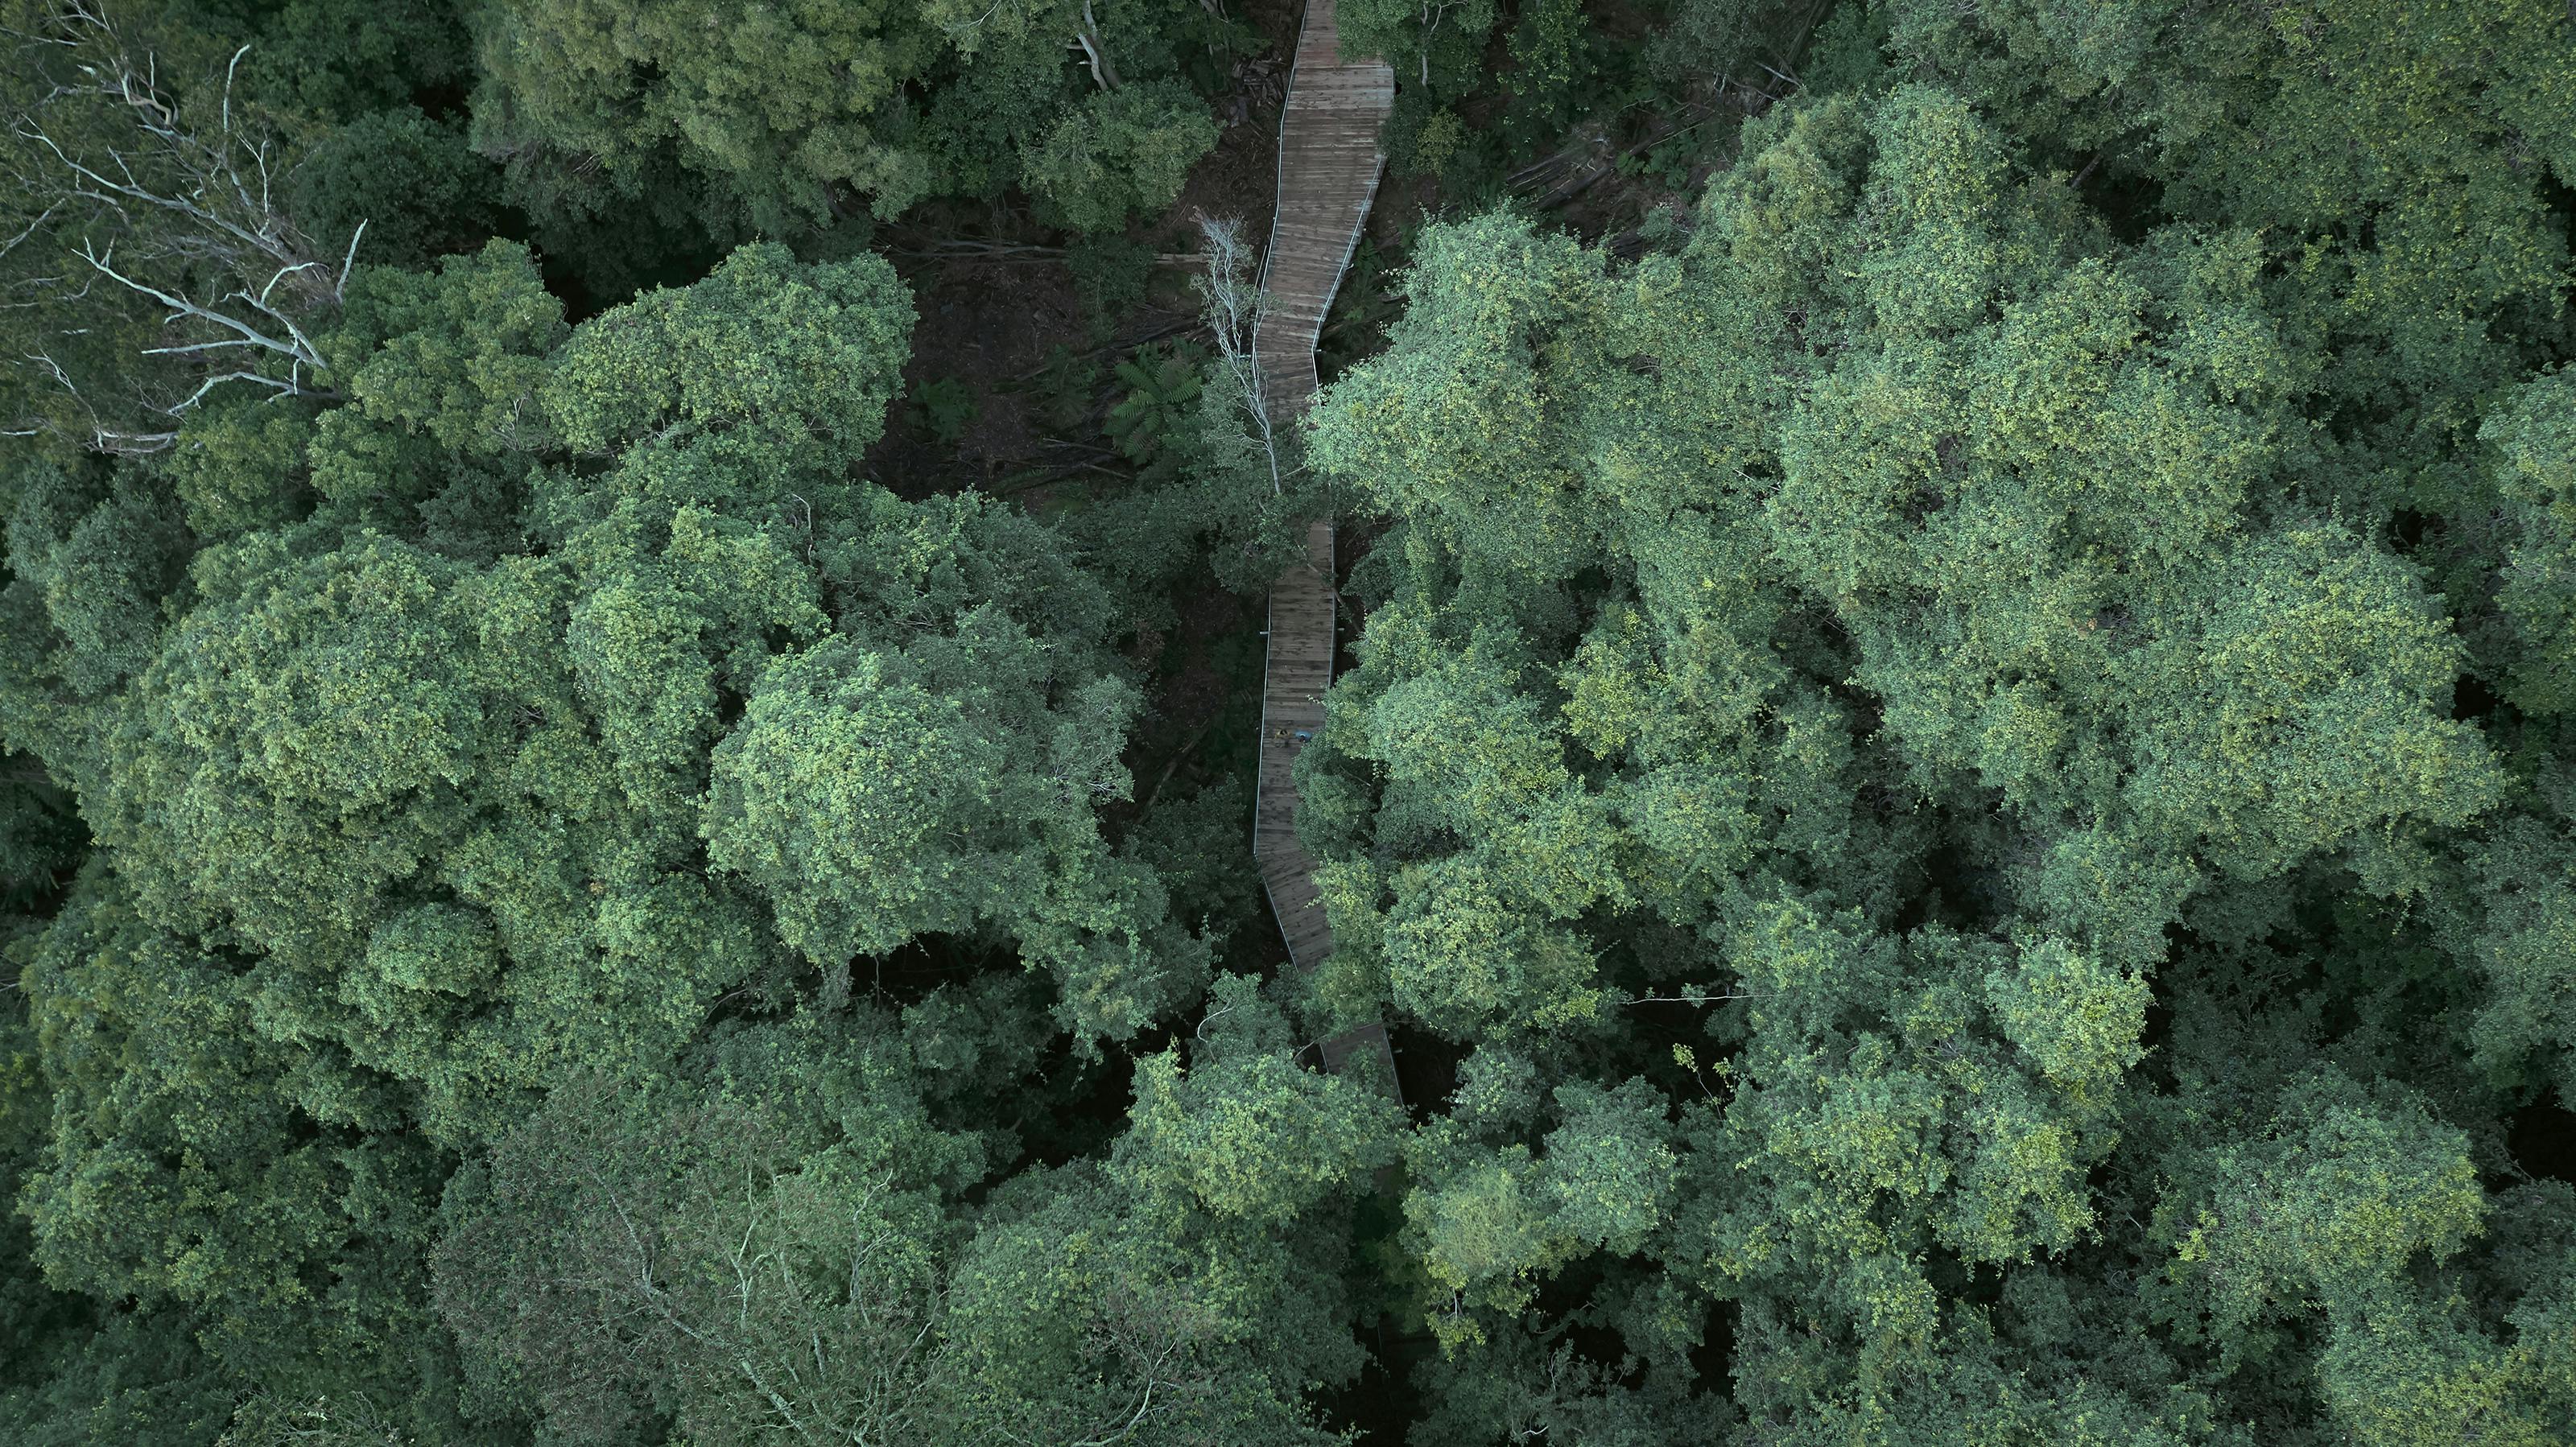 Birdseye view of Scenic World walkway amongst trees